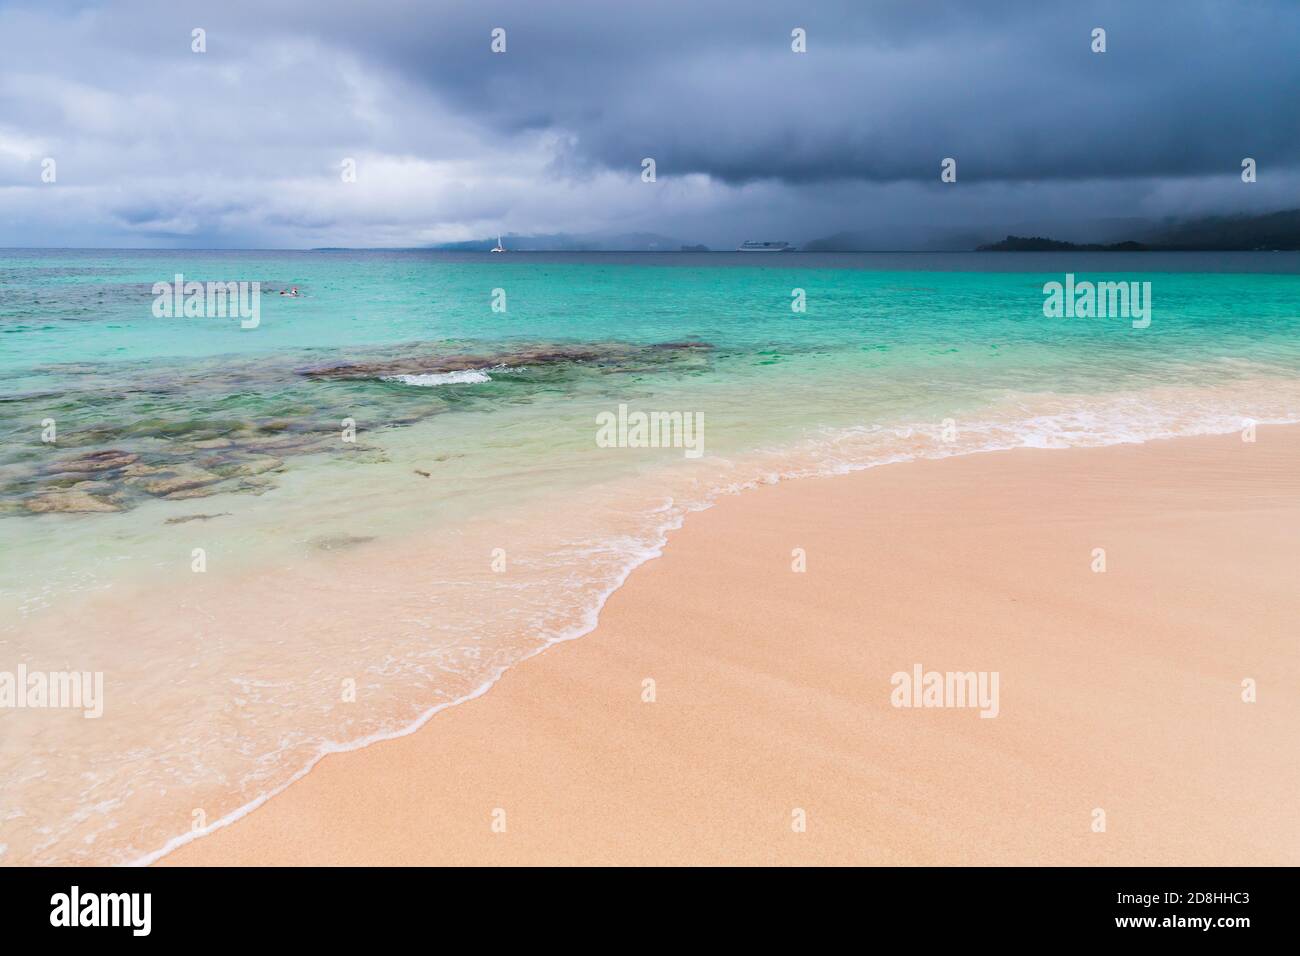 Spiaggia vuota. Paesaggio costiero con mare azzurro sotto il cielo scuro e drammatico. Costa atlantica dell'oceano, repubblica Dominicana. Samana Foto Stock